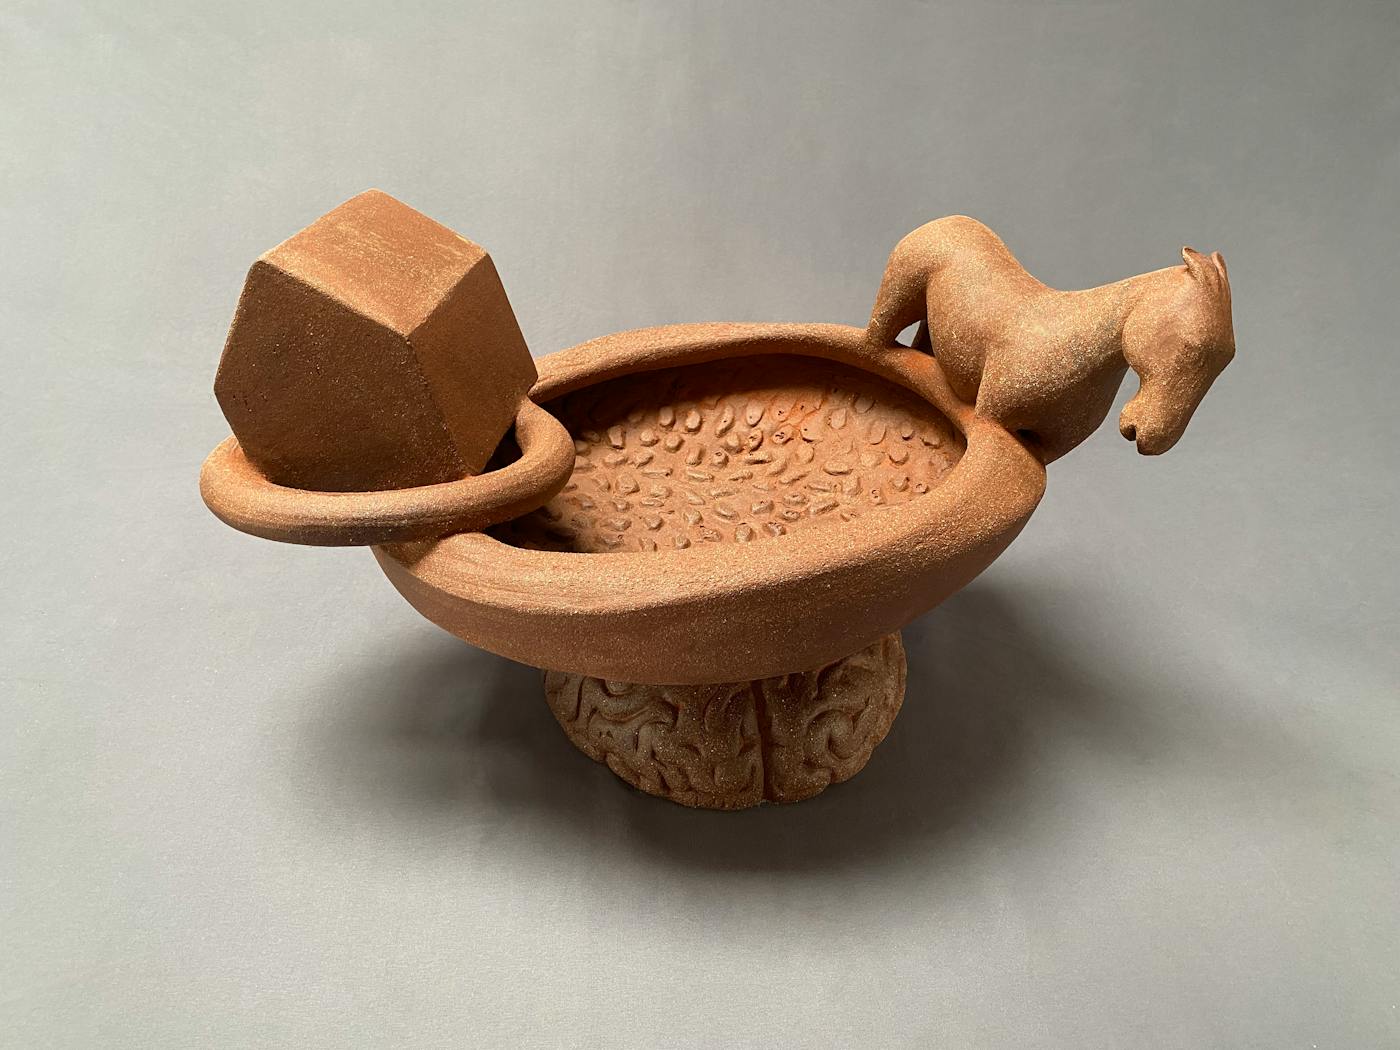 Sculptural ceramic vessel depicting a farm